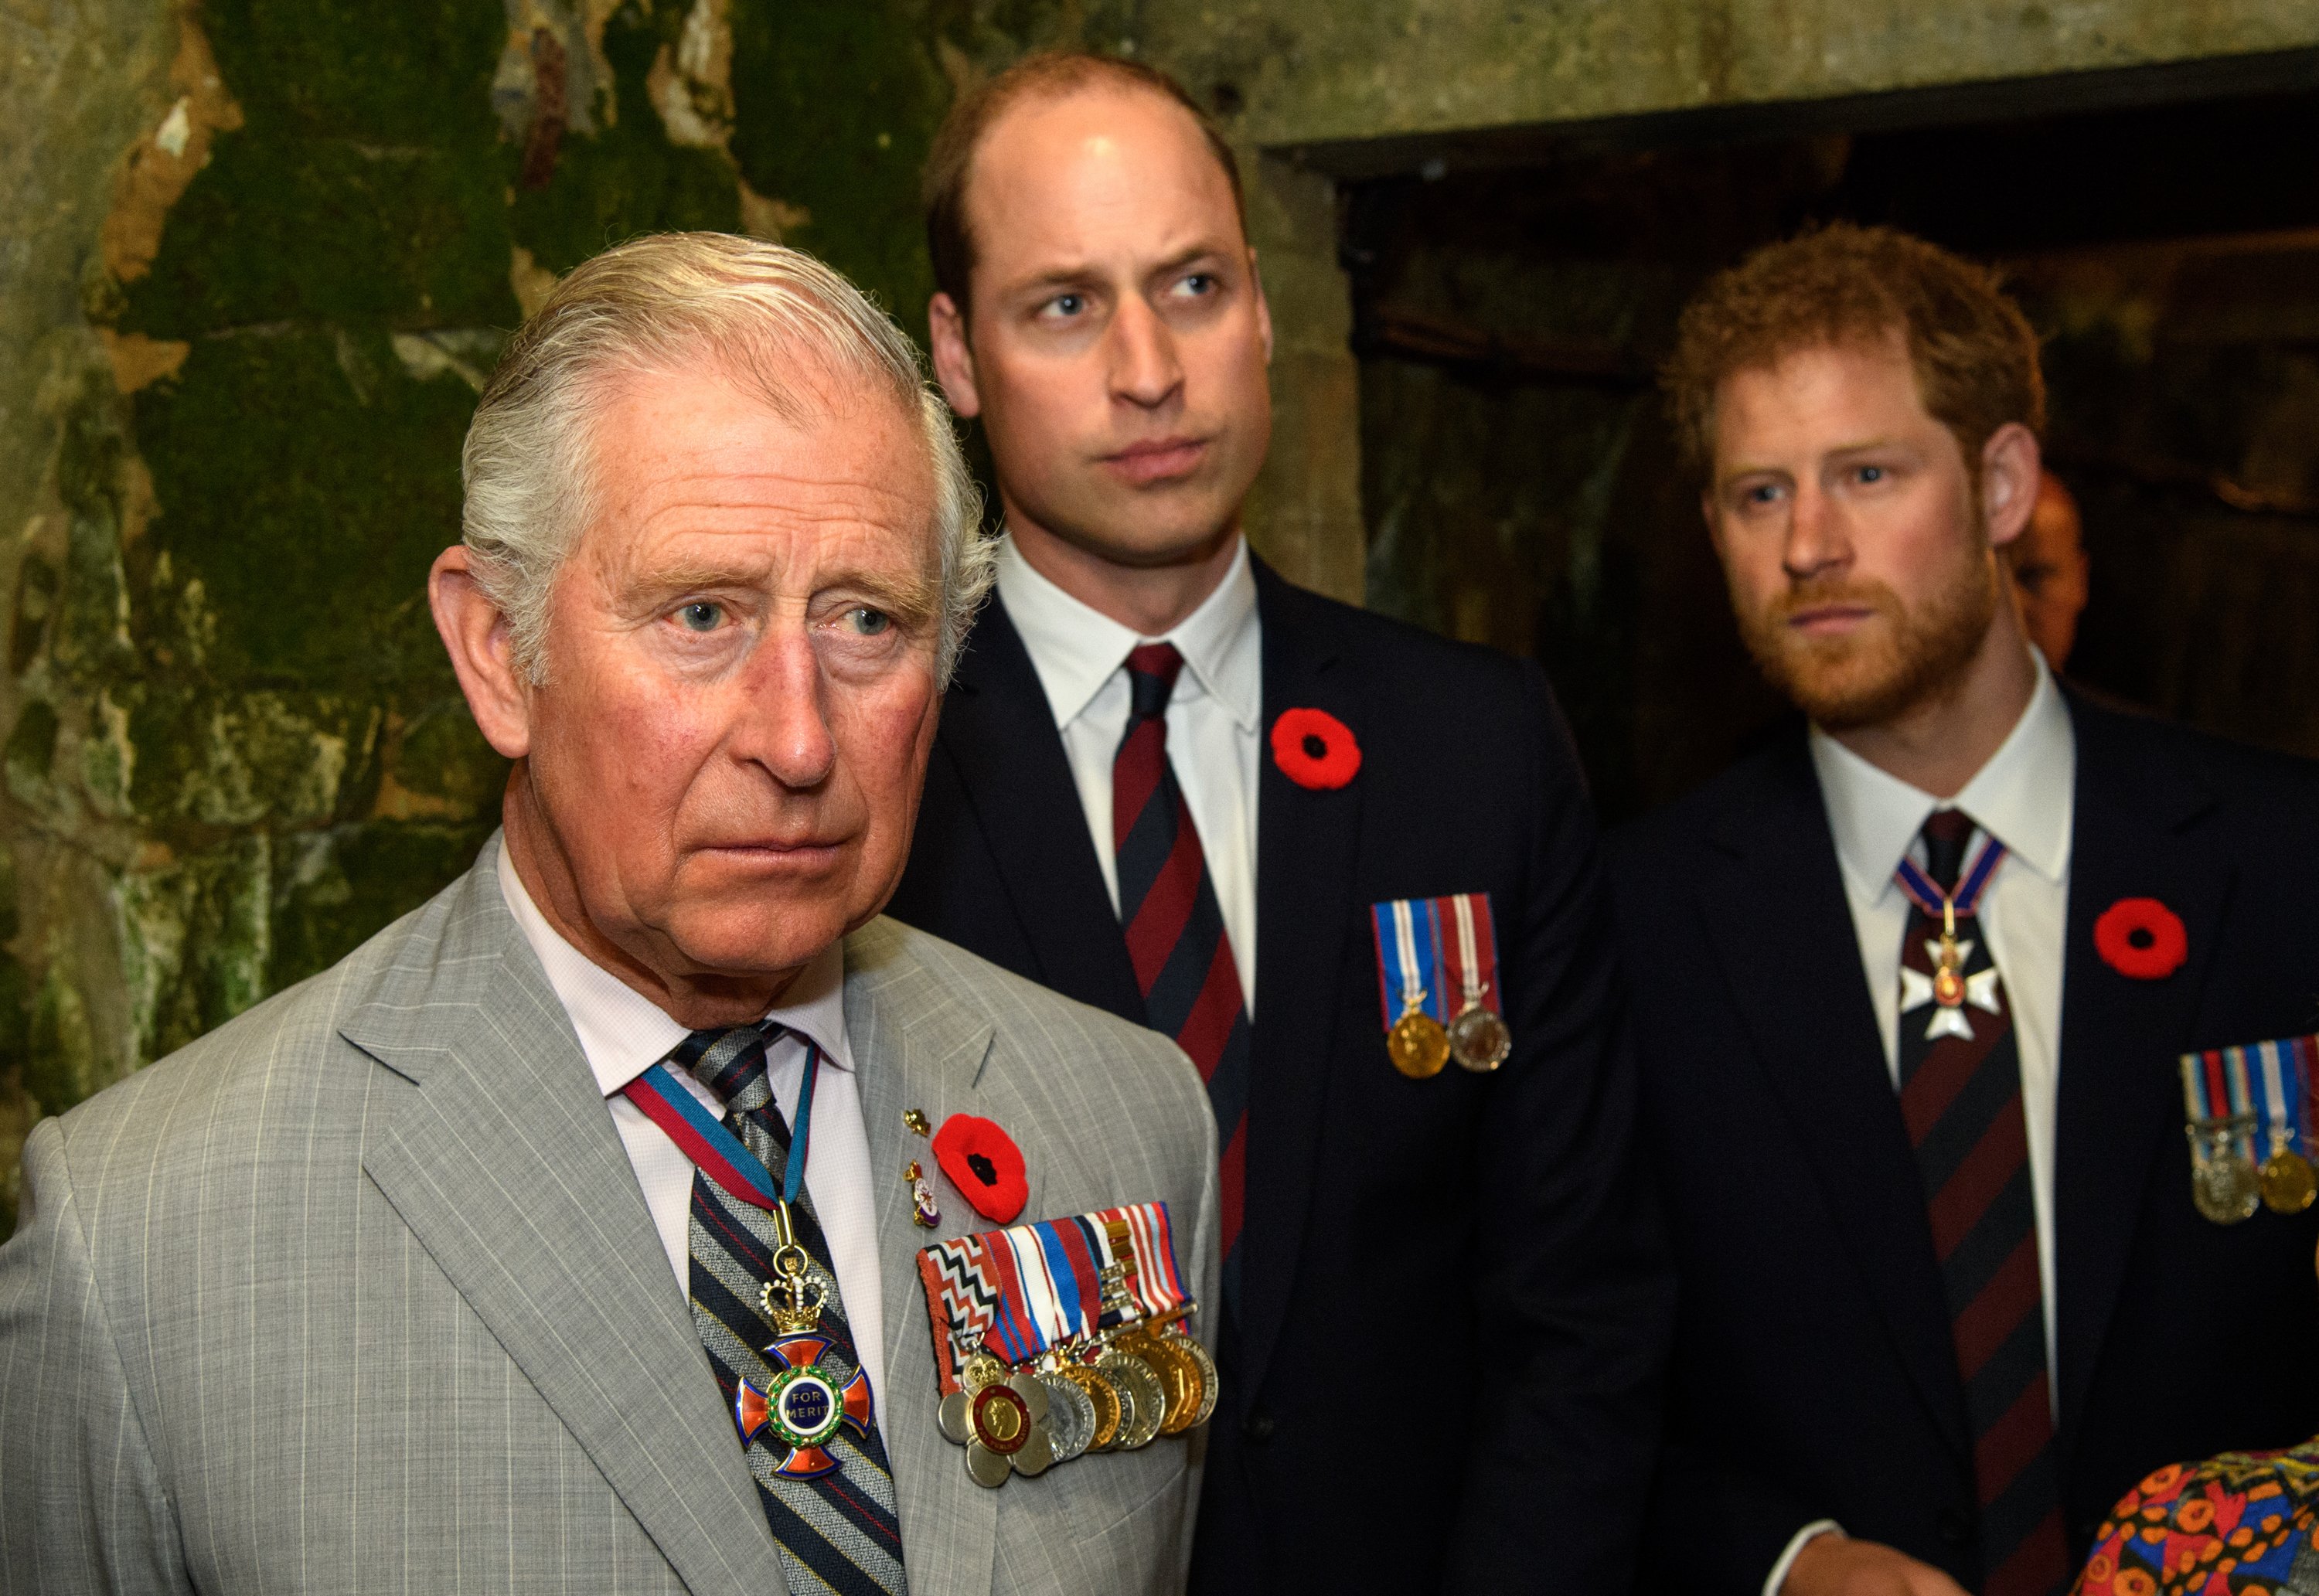 El príncipe Harry, el príncipe Charles y el príncipe William en Francia, en 2017. | Foto: Getty Images